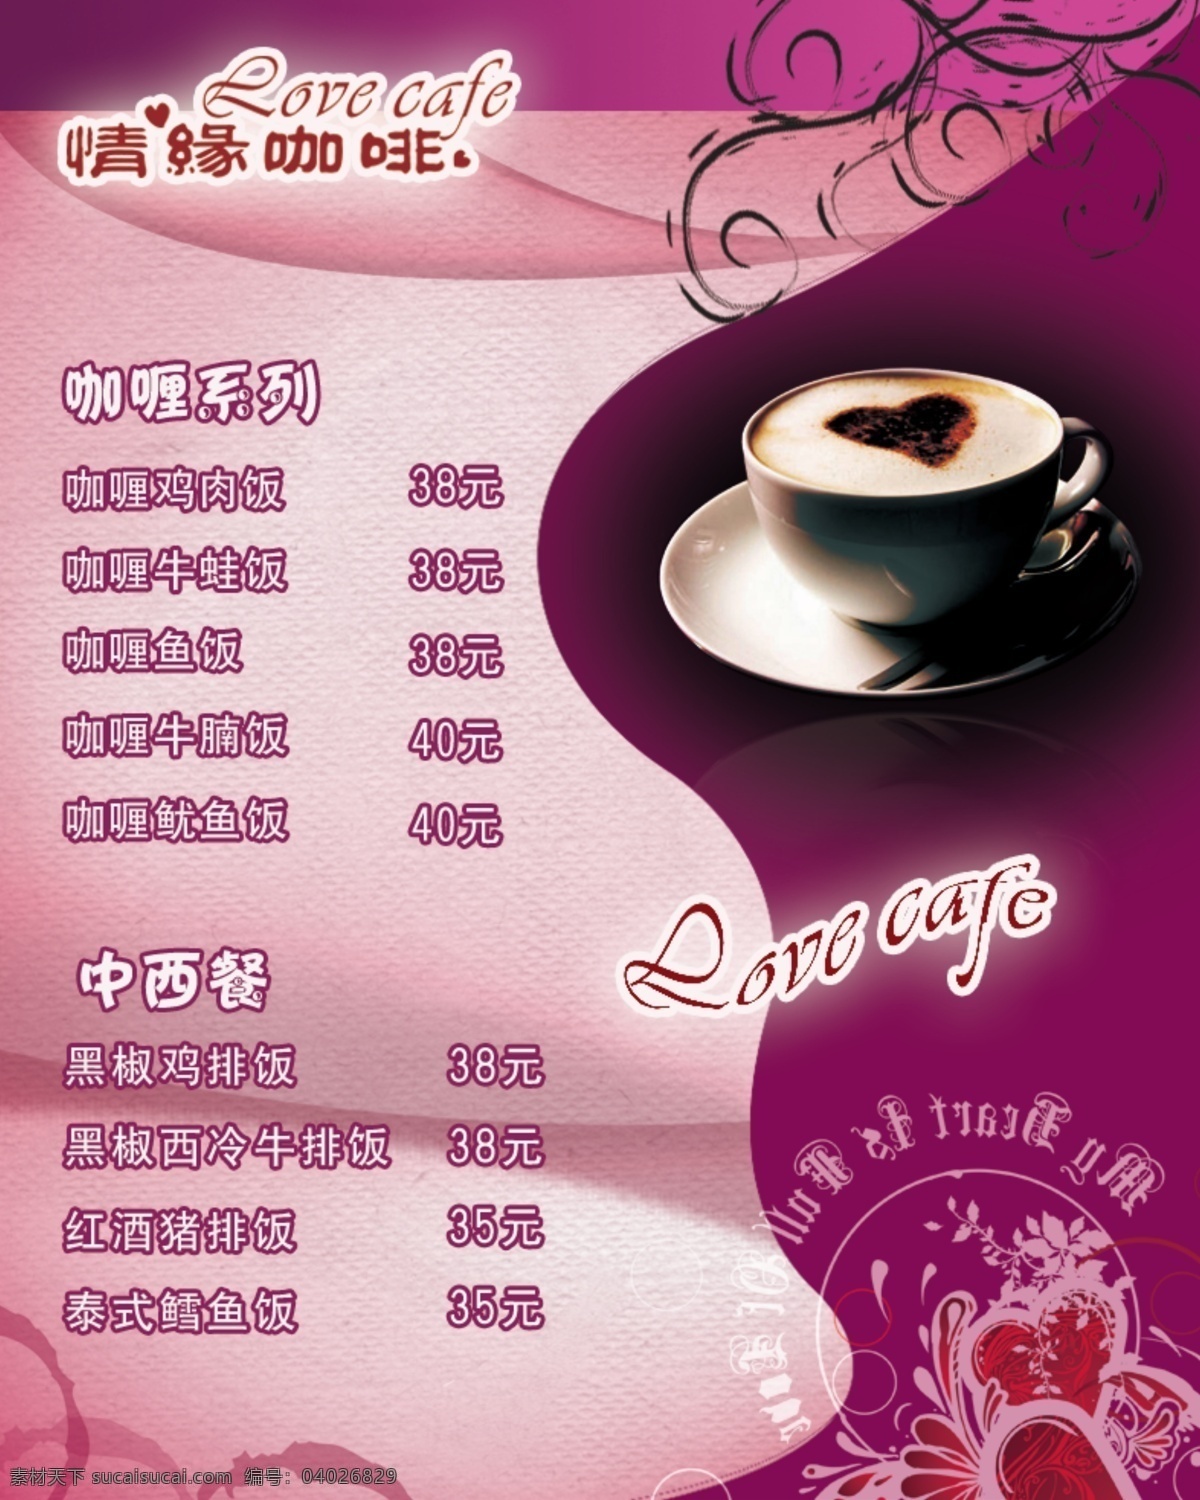 分层 爱心 杯子 菜单 咖啡菜单 源文件 紫色背景 咖啡 模板下载 情缘咖啡 海报 海报背景图